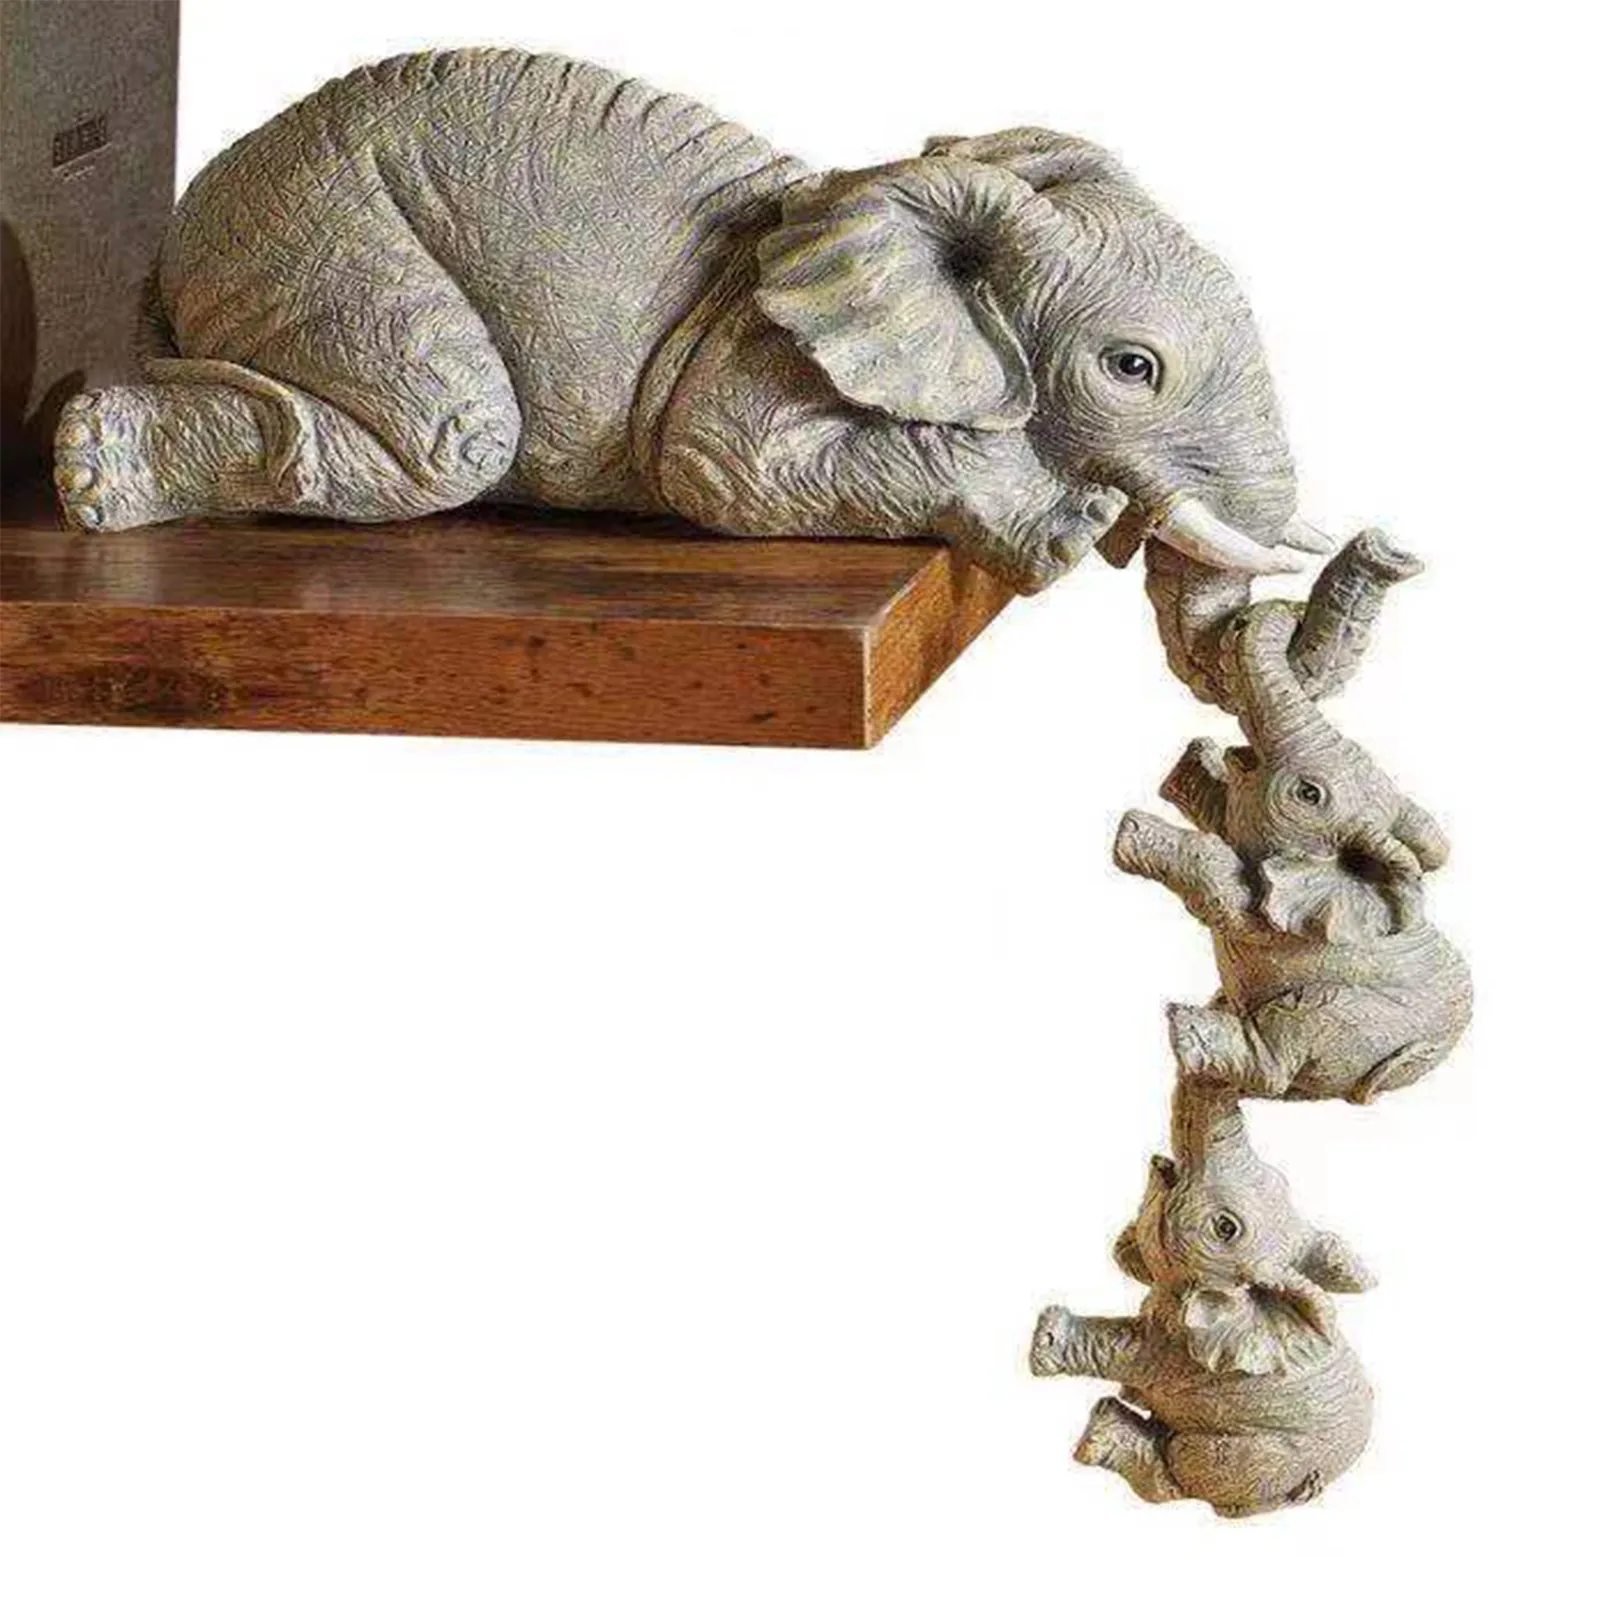 

Декоративная статуэтка в виде слона из смолы, домашнее украшение в виде животного, настольное украшение, ручная работа, скульптура для дома...